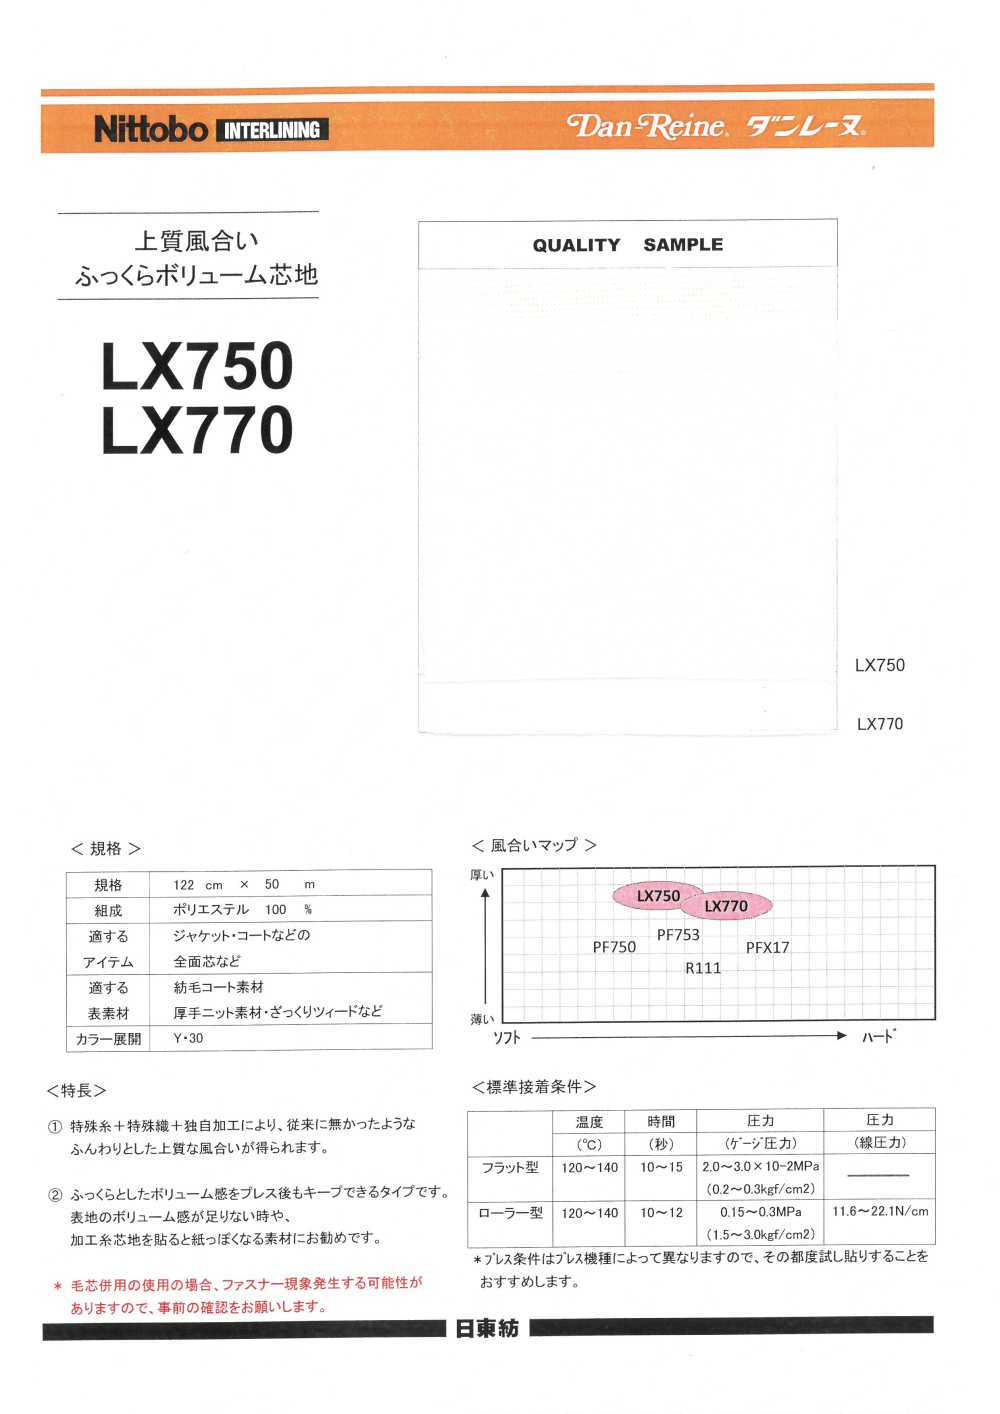 LX770 Fixierbare Einlage, Hochwertige Textur, Pralle Und Voluminöse Einlage Nittobo